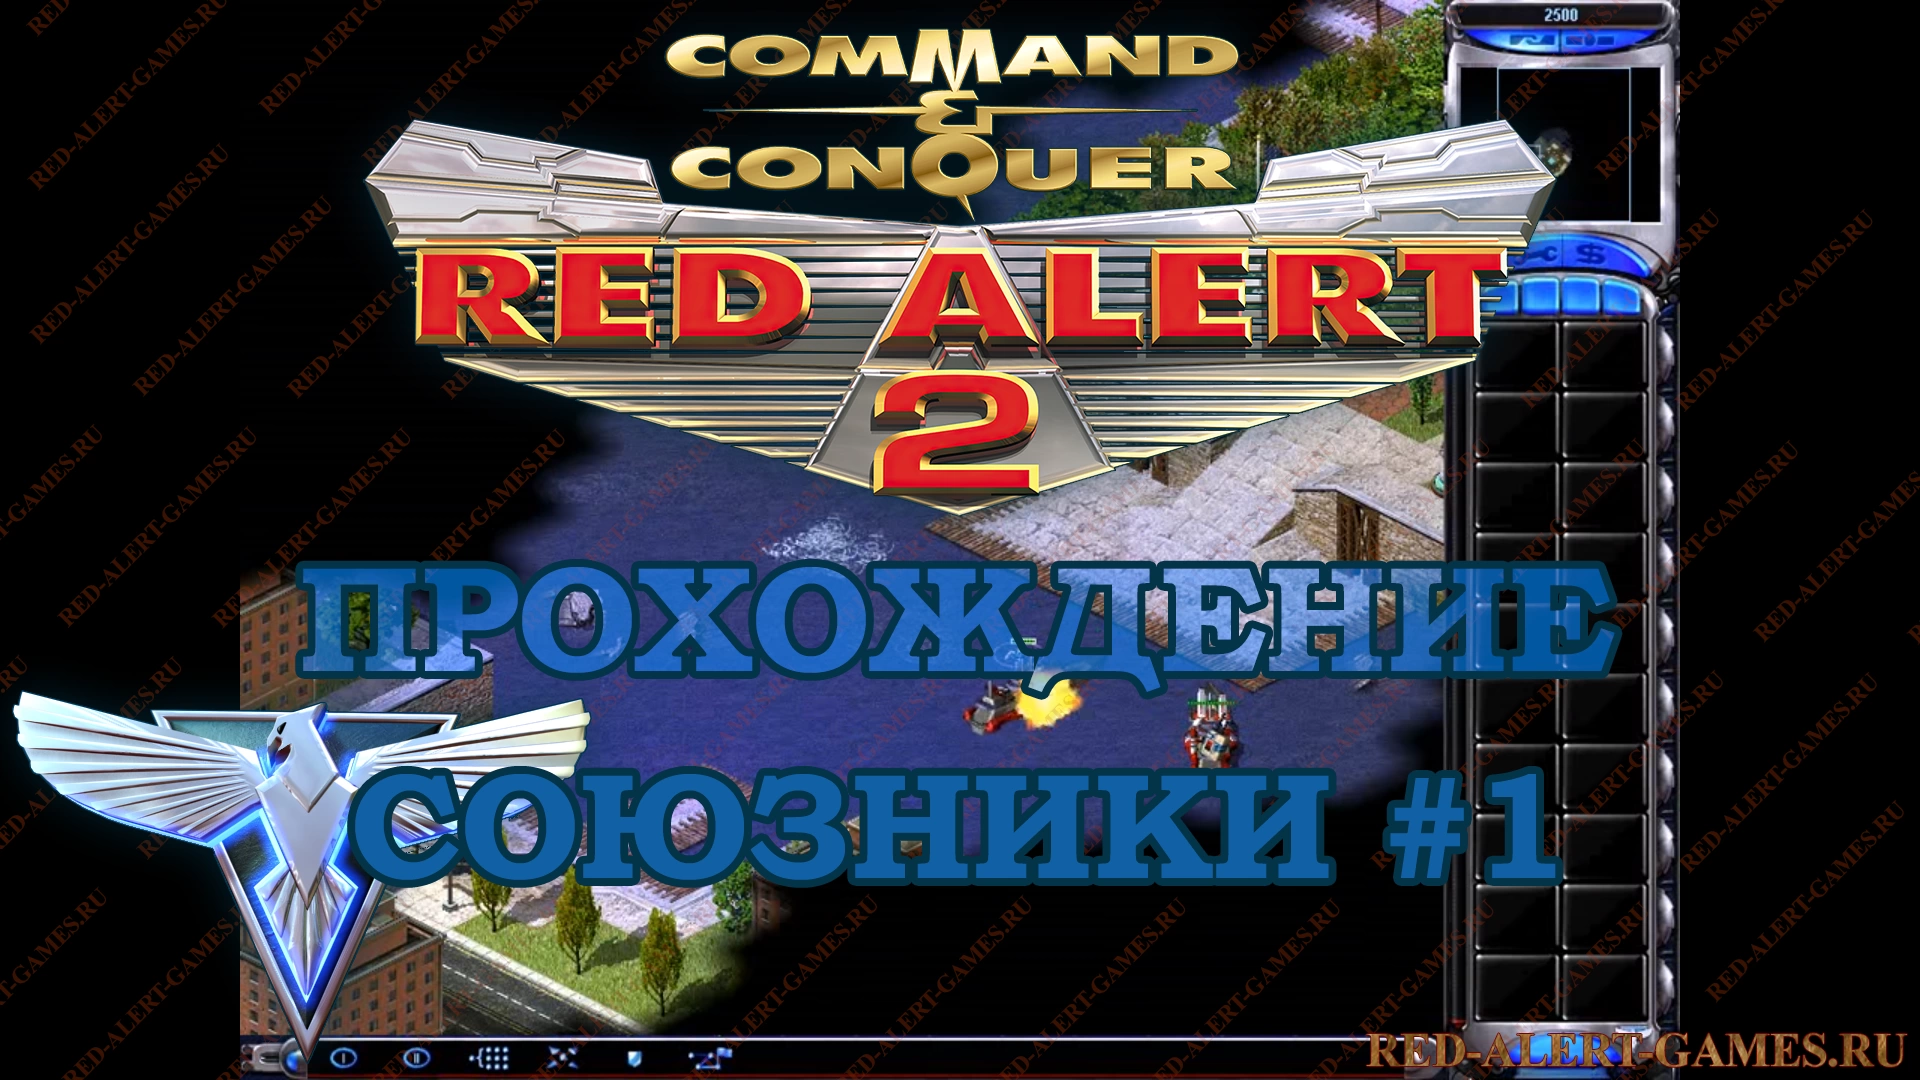 Red Alert 2 Прохождение Союзники - Миссия 1. Одинокий страж (Lone Guardian)